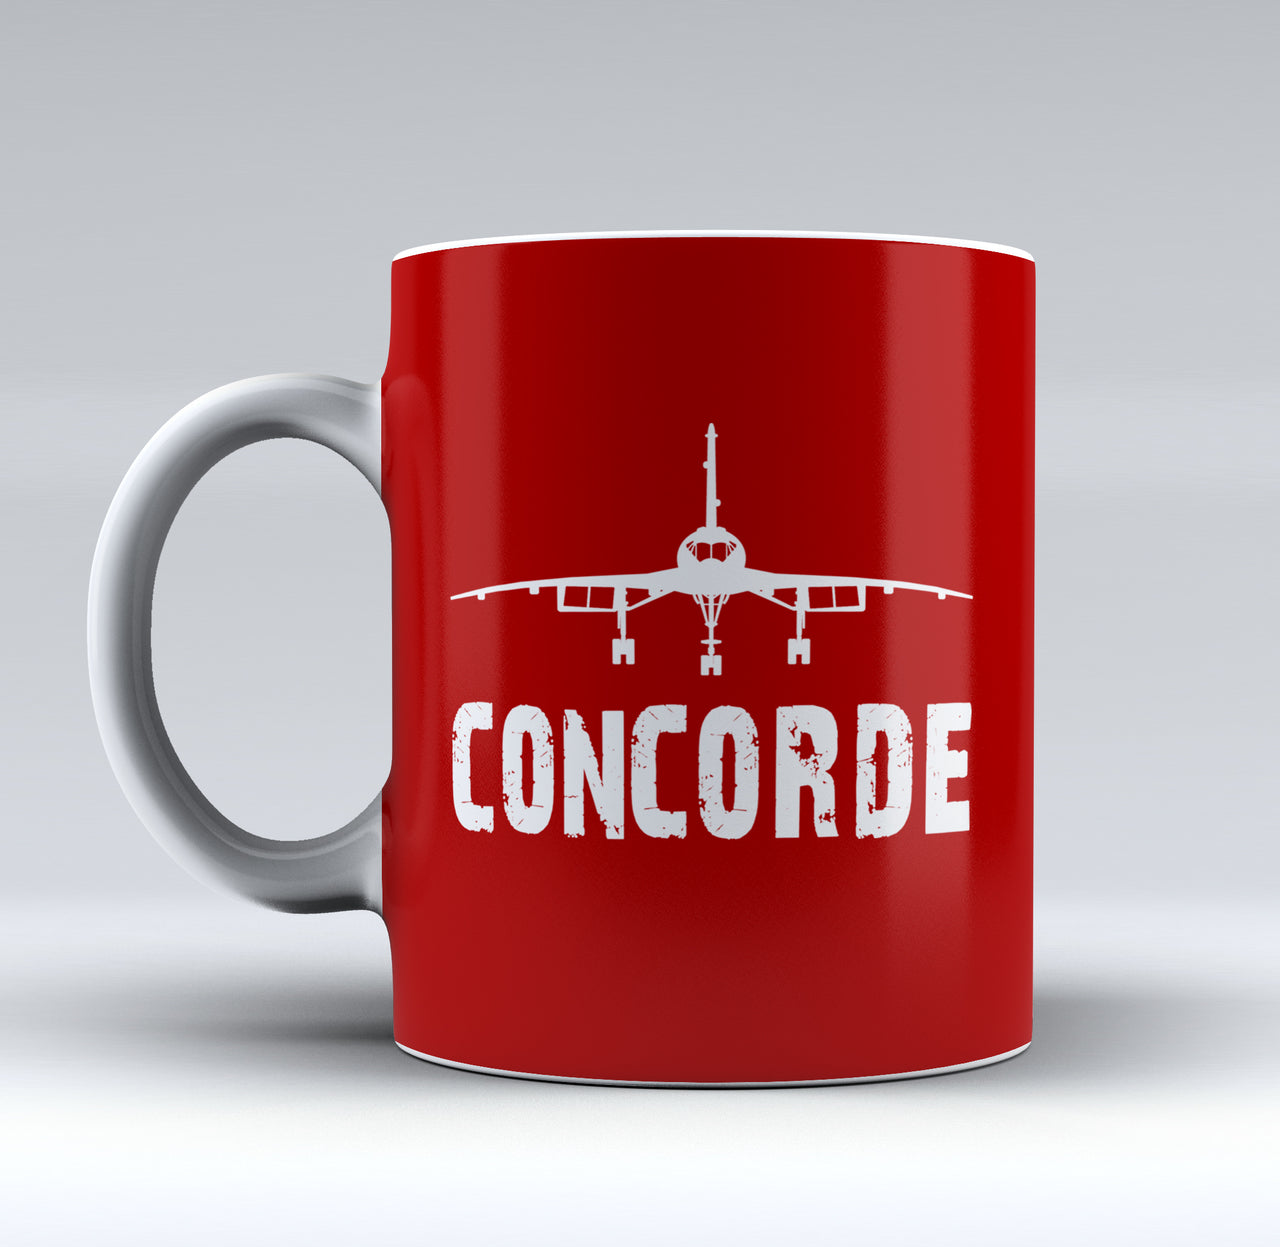 Concorde & Plane Designed Mugs